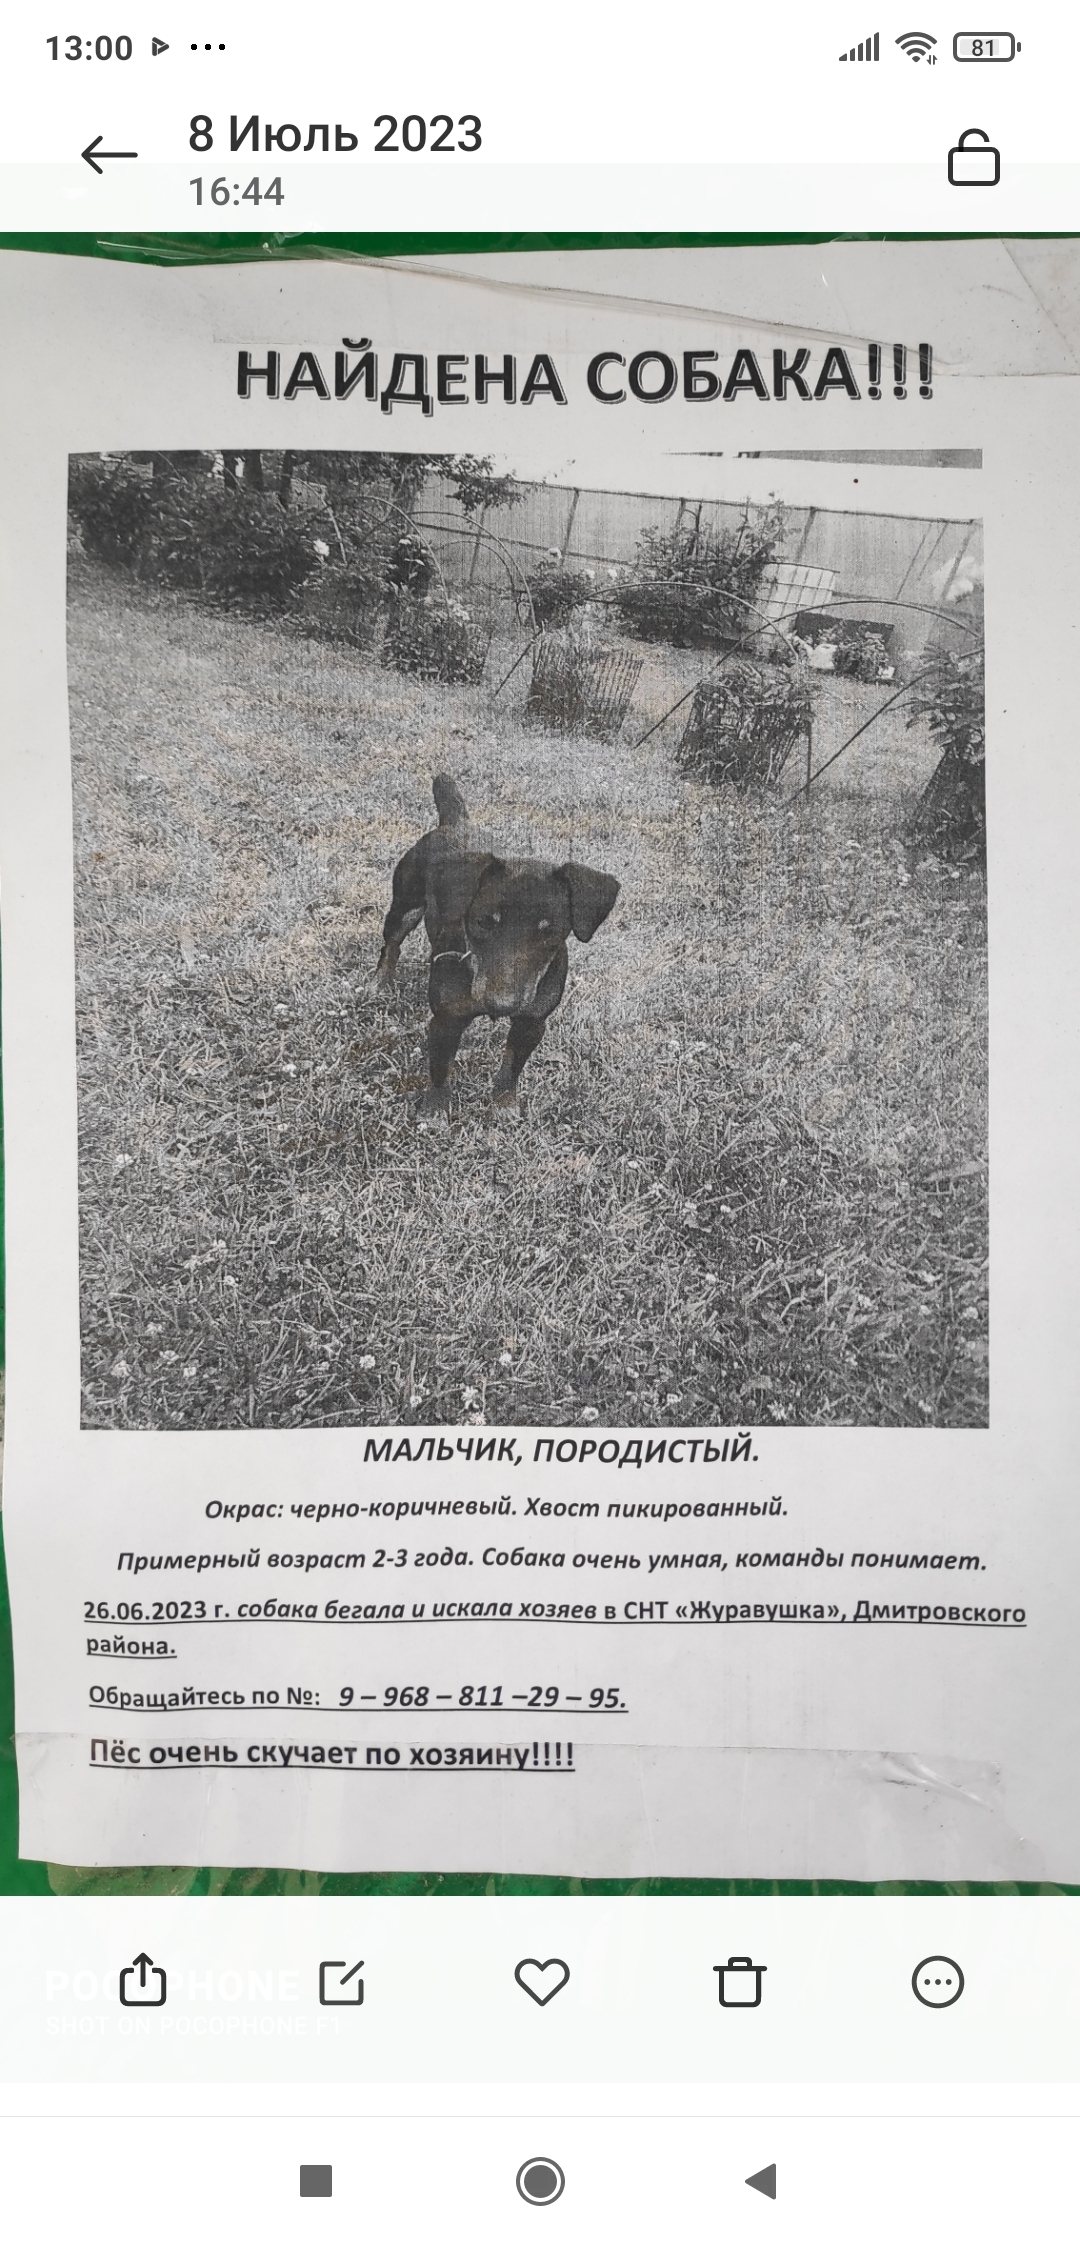 Собака Ягдтерьер найдена в СНТ на Дмитровском шоссе